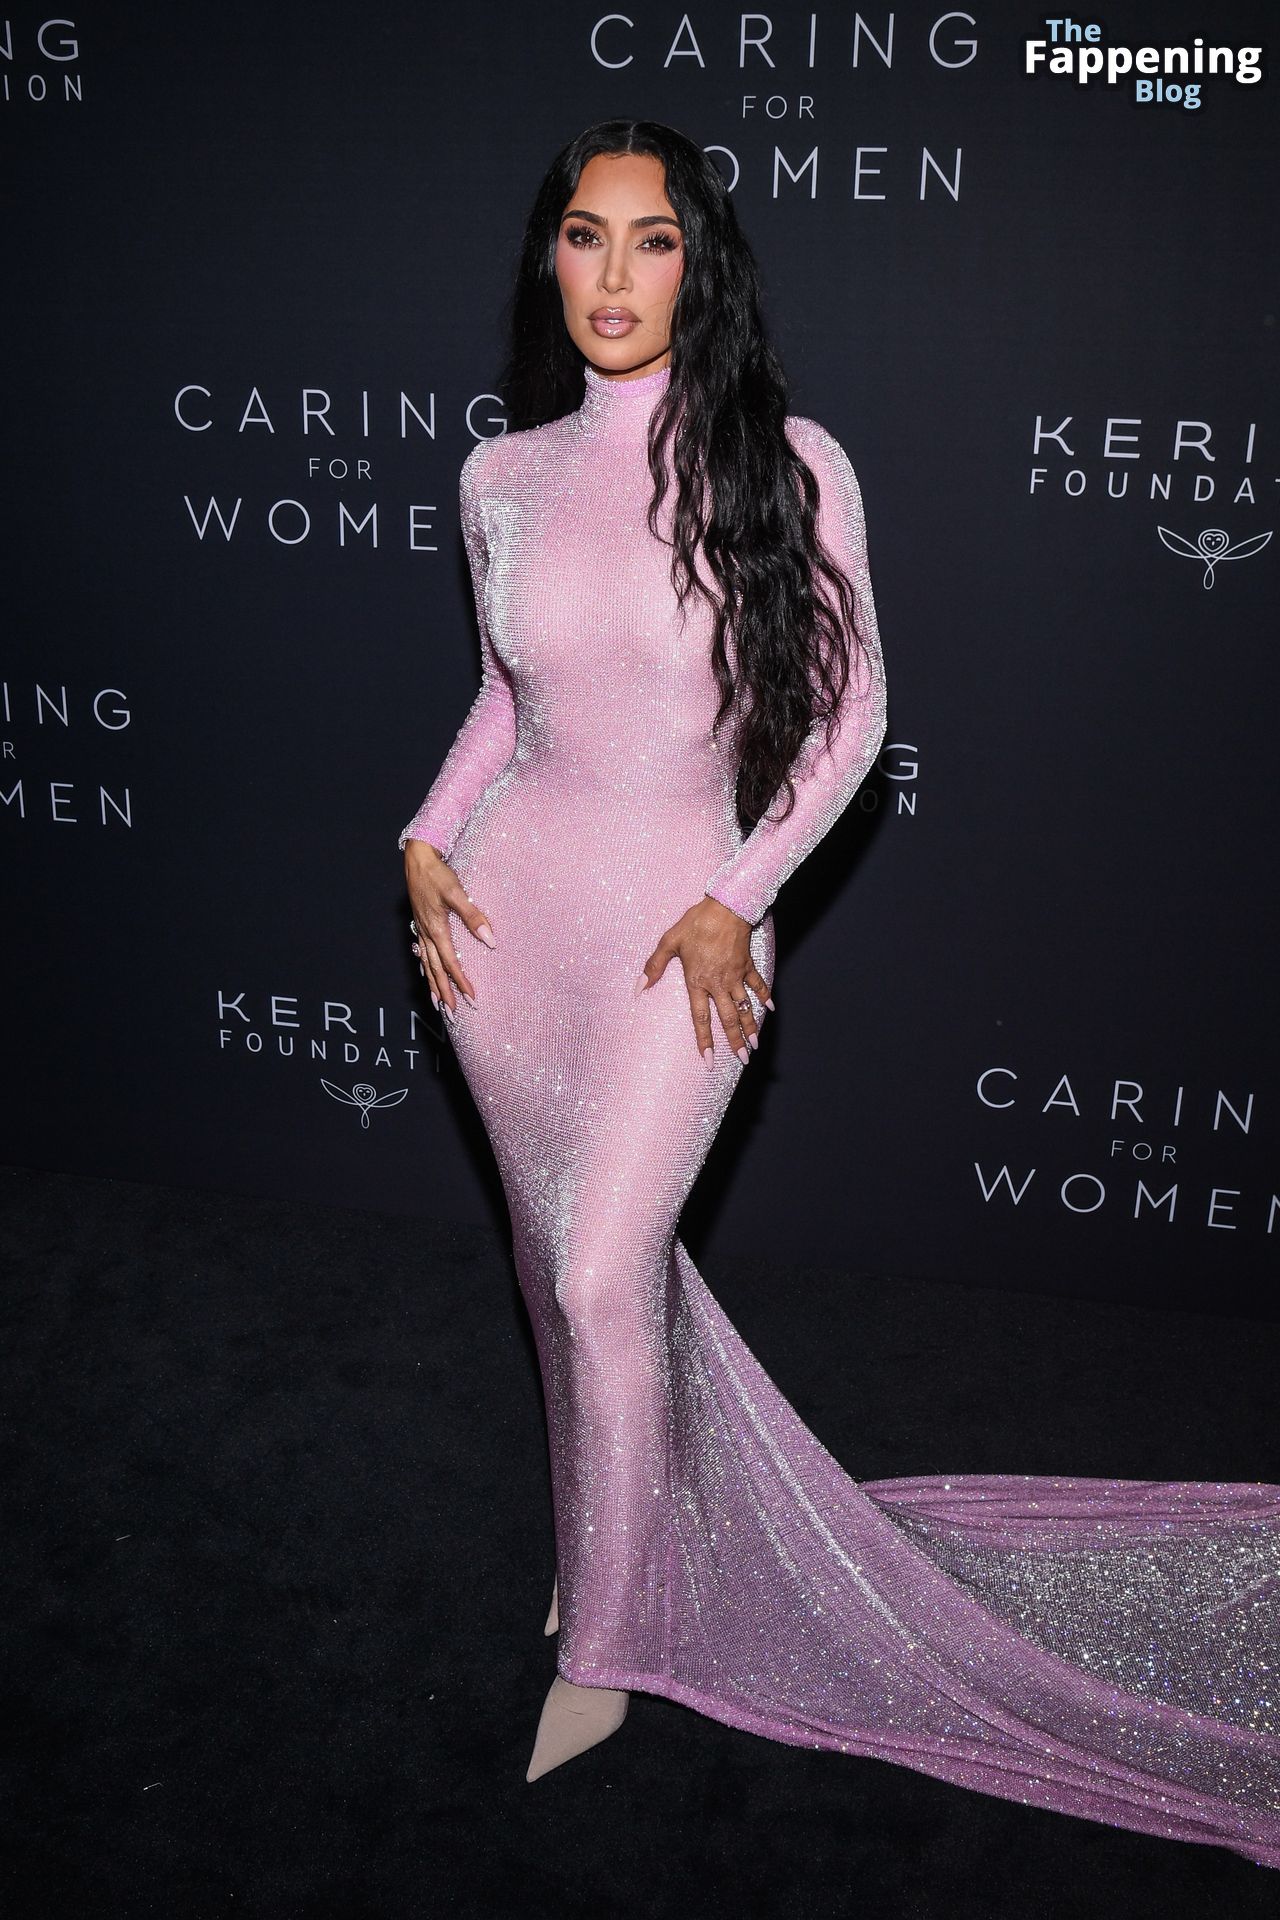 Kim-Kardashian-Sexy-91-The-Fappening-Blog.jpg